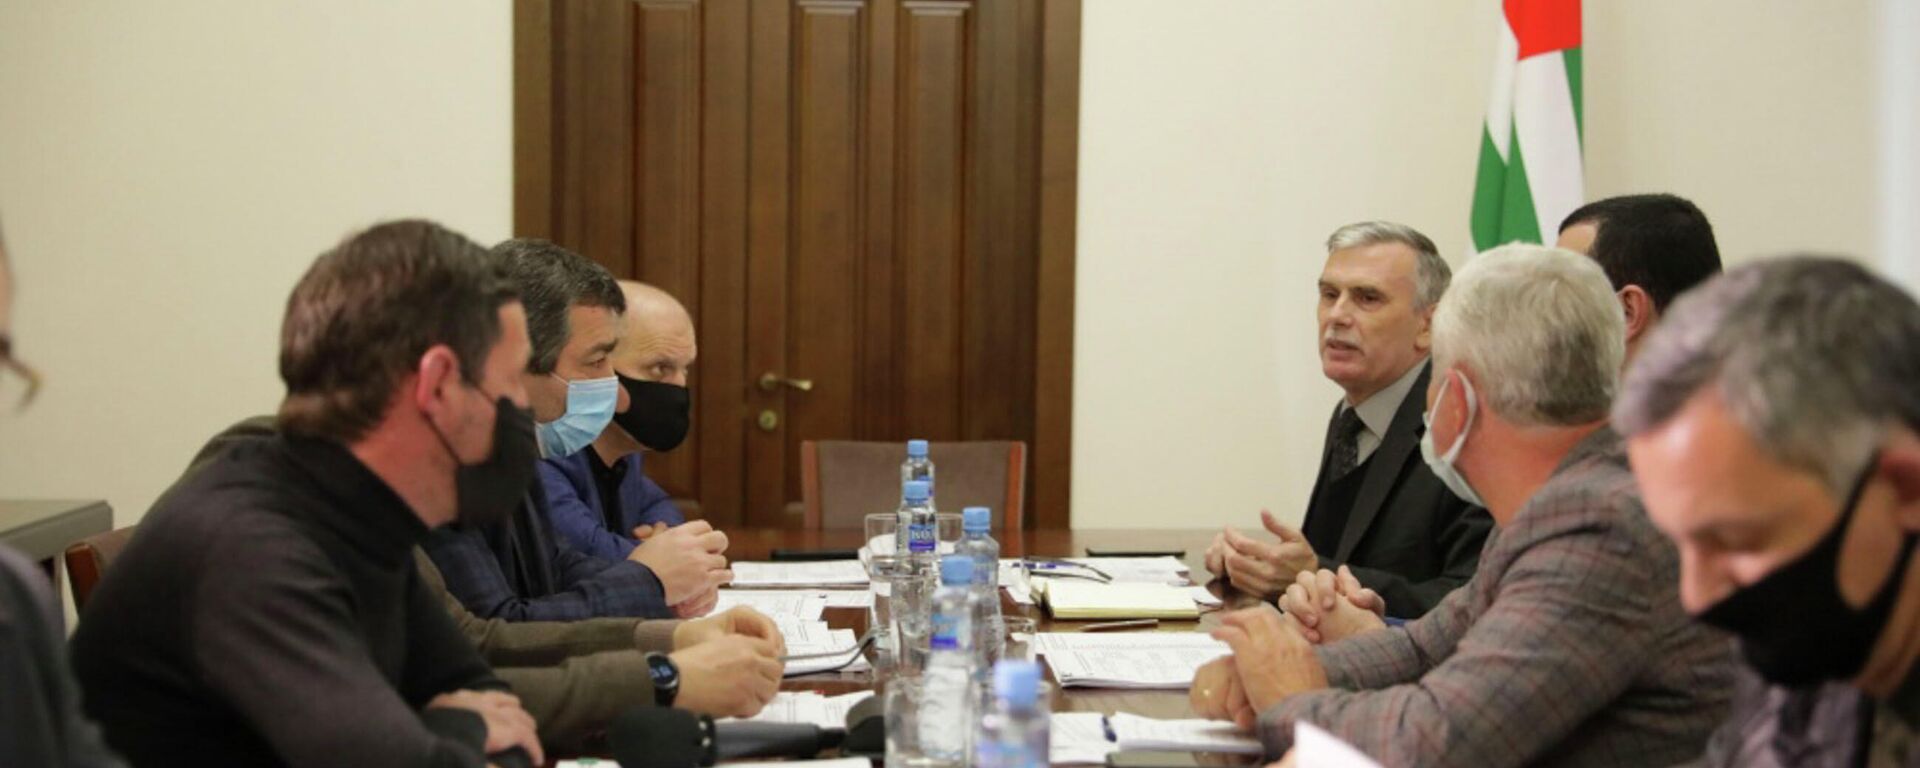 Заседание межведомственной исполнительно-распорядительной комиссии по государственной целевой программе Жилище-2022 - Sputnik Абхазия, 1920, 02.12.2021